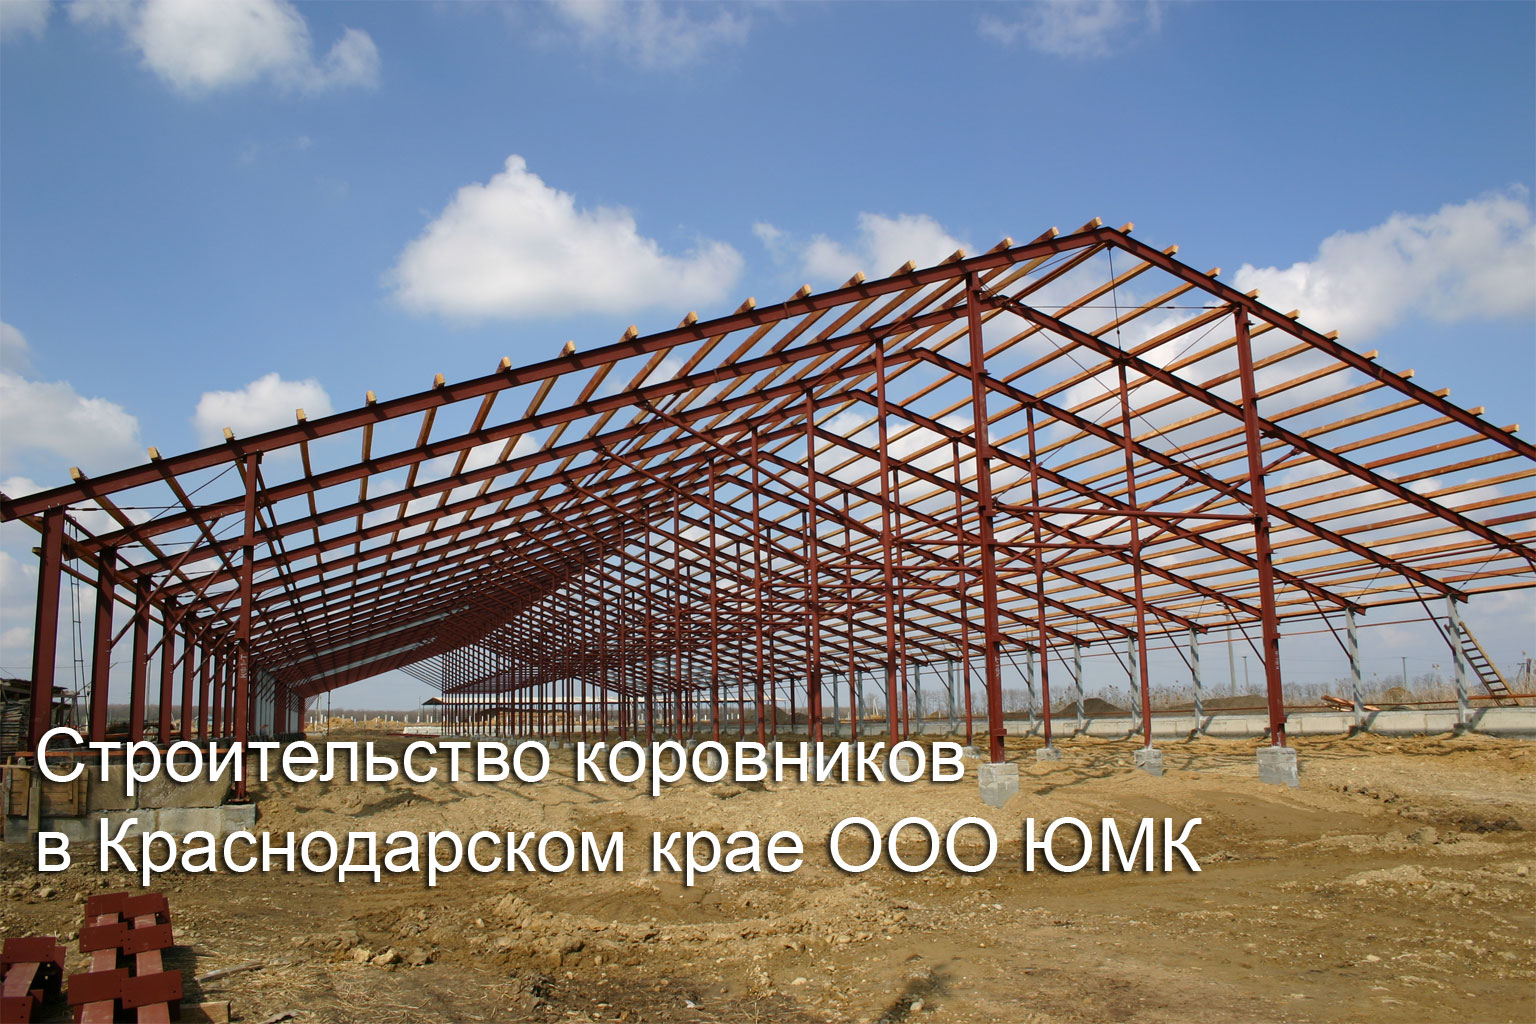 Металлоконструкции для молочных ферм, свиноферм, коровников, свинарников в Краснодаре и Краснодарском крае. 